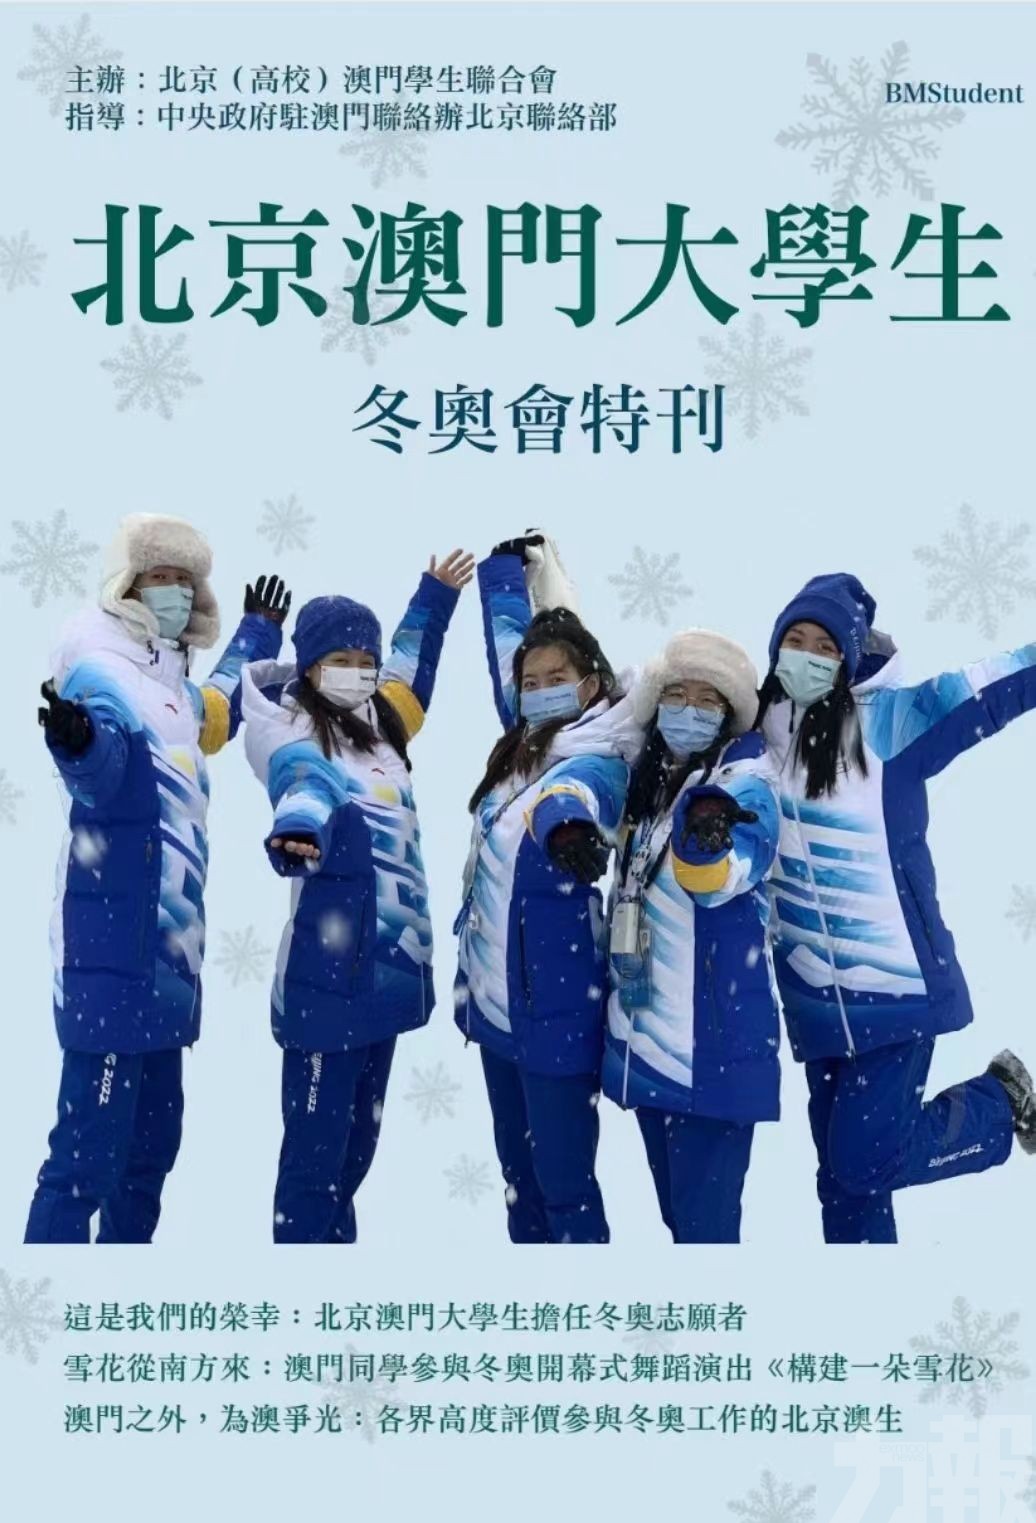 ​《北京澳門大學生》冬奧會特刊正式發佈